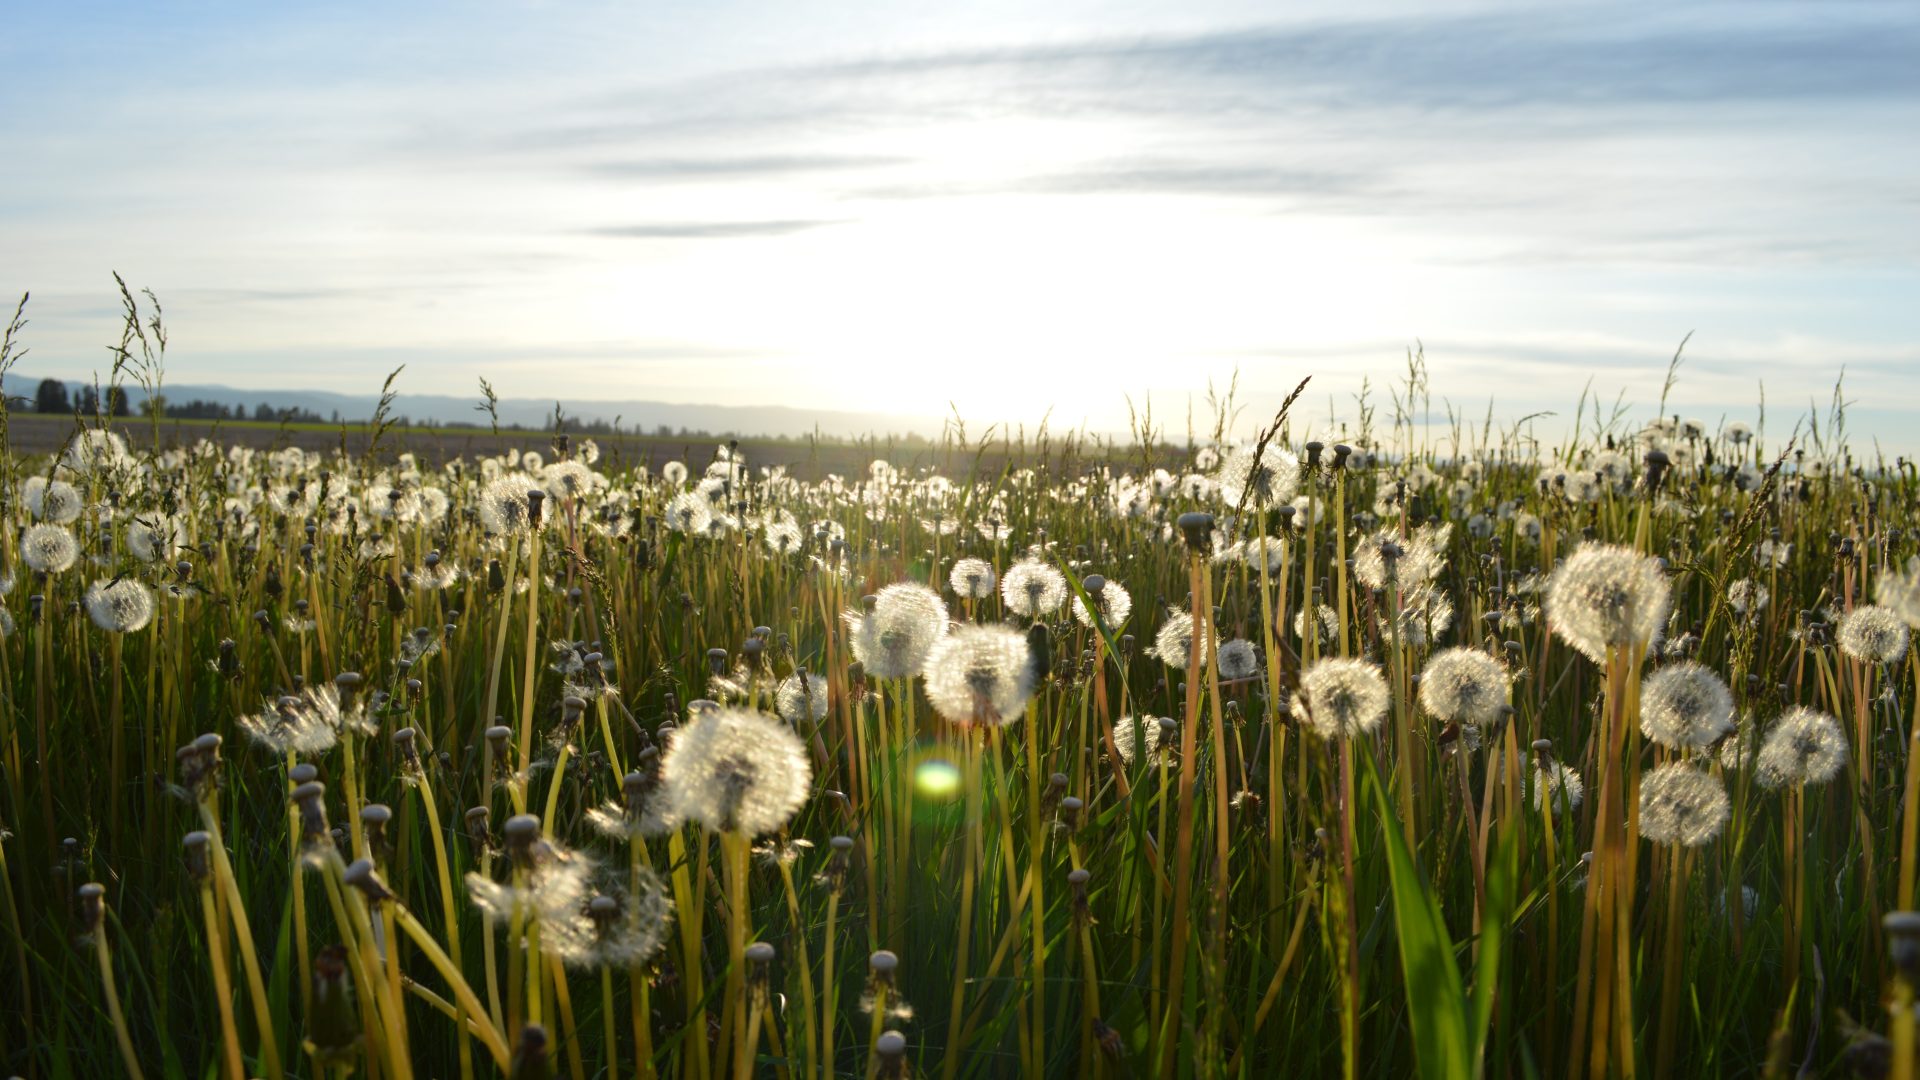 Dandelions in a sunlit field